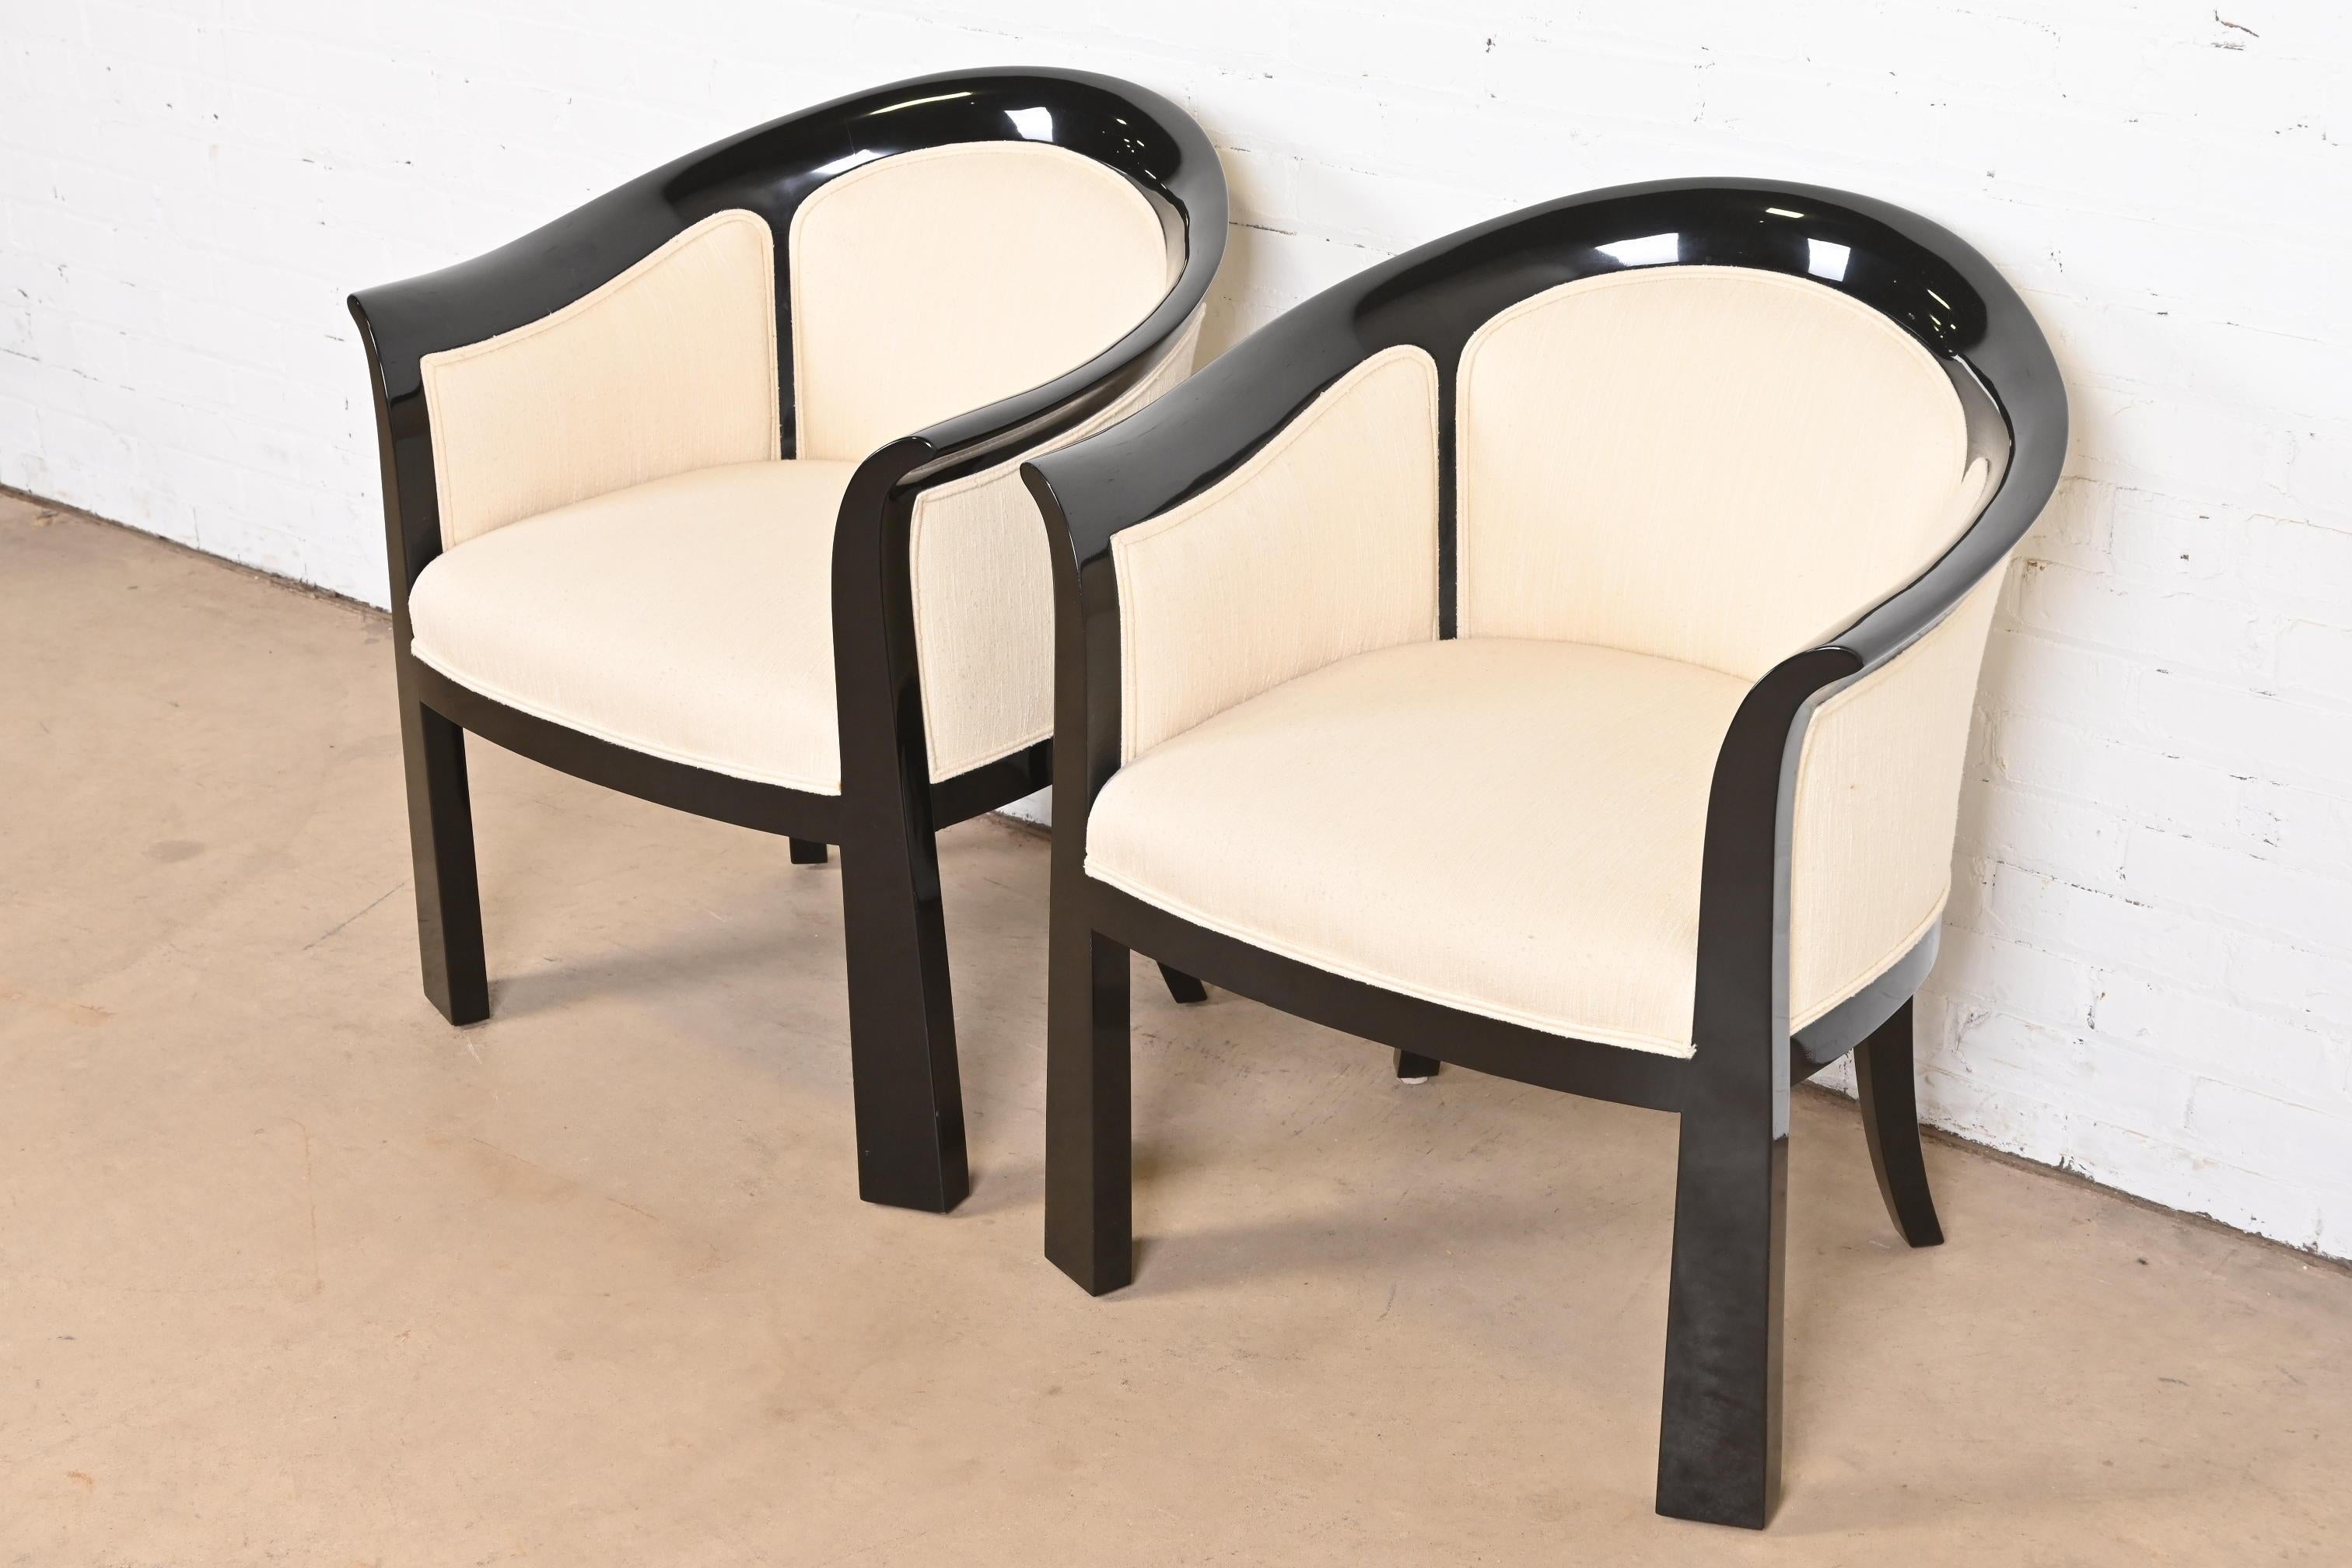 20ième siècle Interior Crafts Modernity Art Deco Paire de chaises baignoires laquées noires